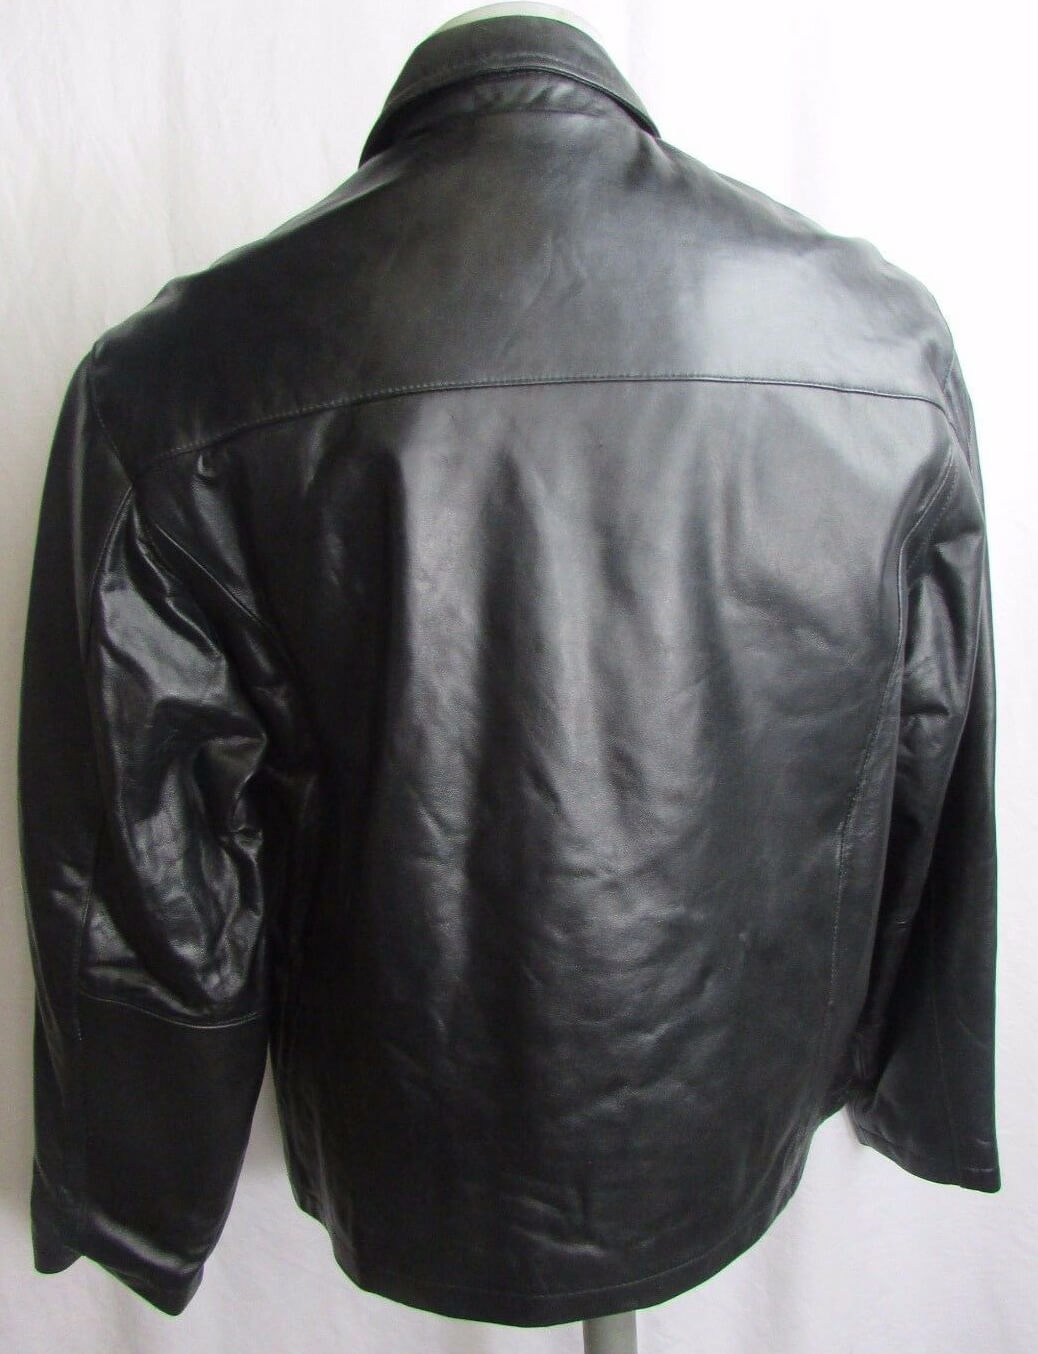 Vintage NFL Jacksonville Jaguars Black Leather Jacket - Maker of Jacket